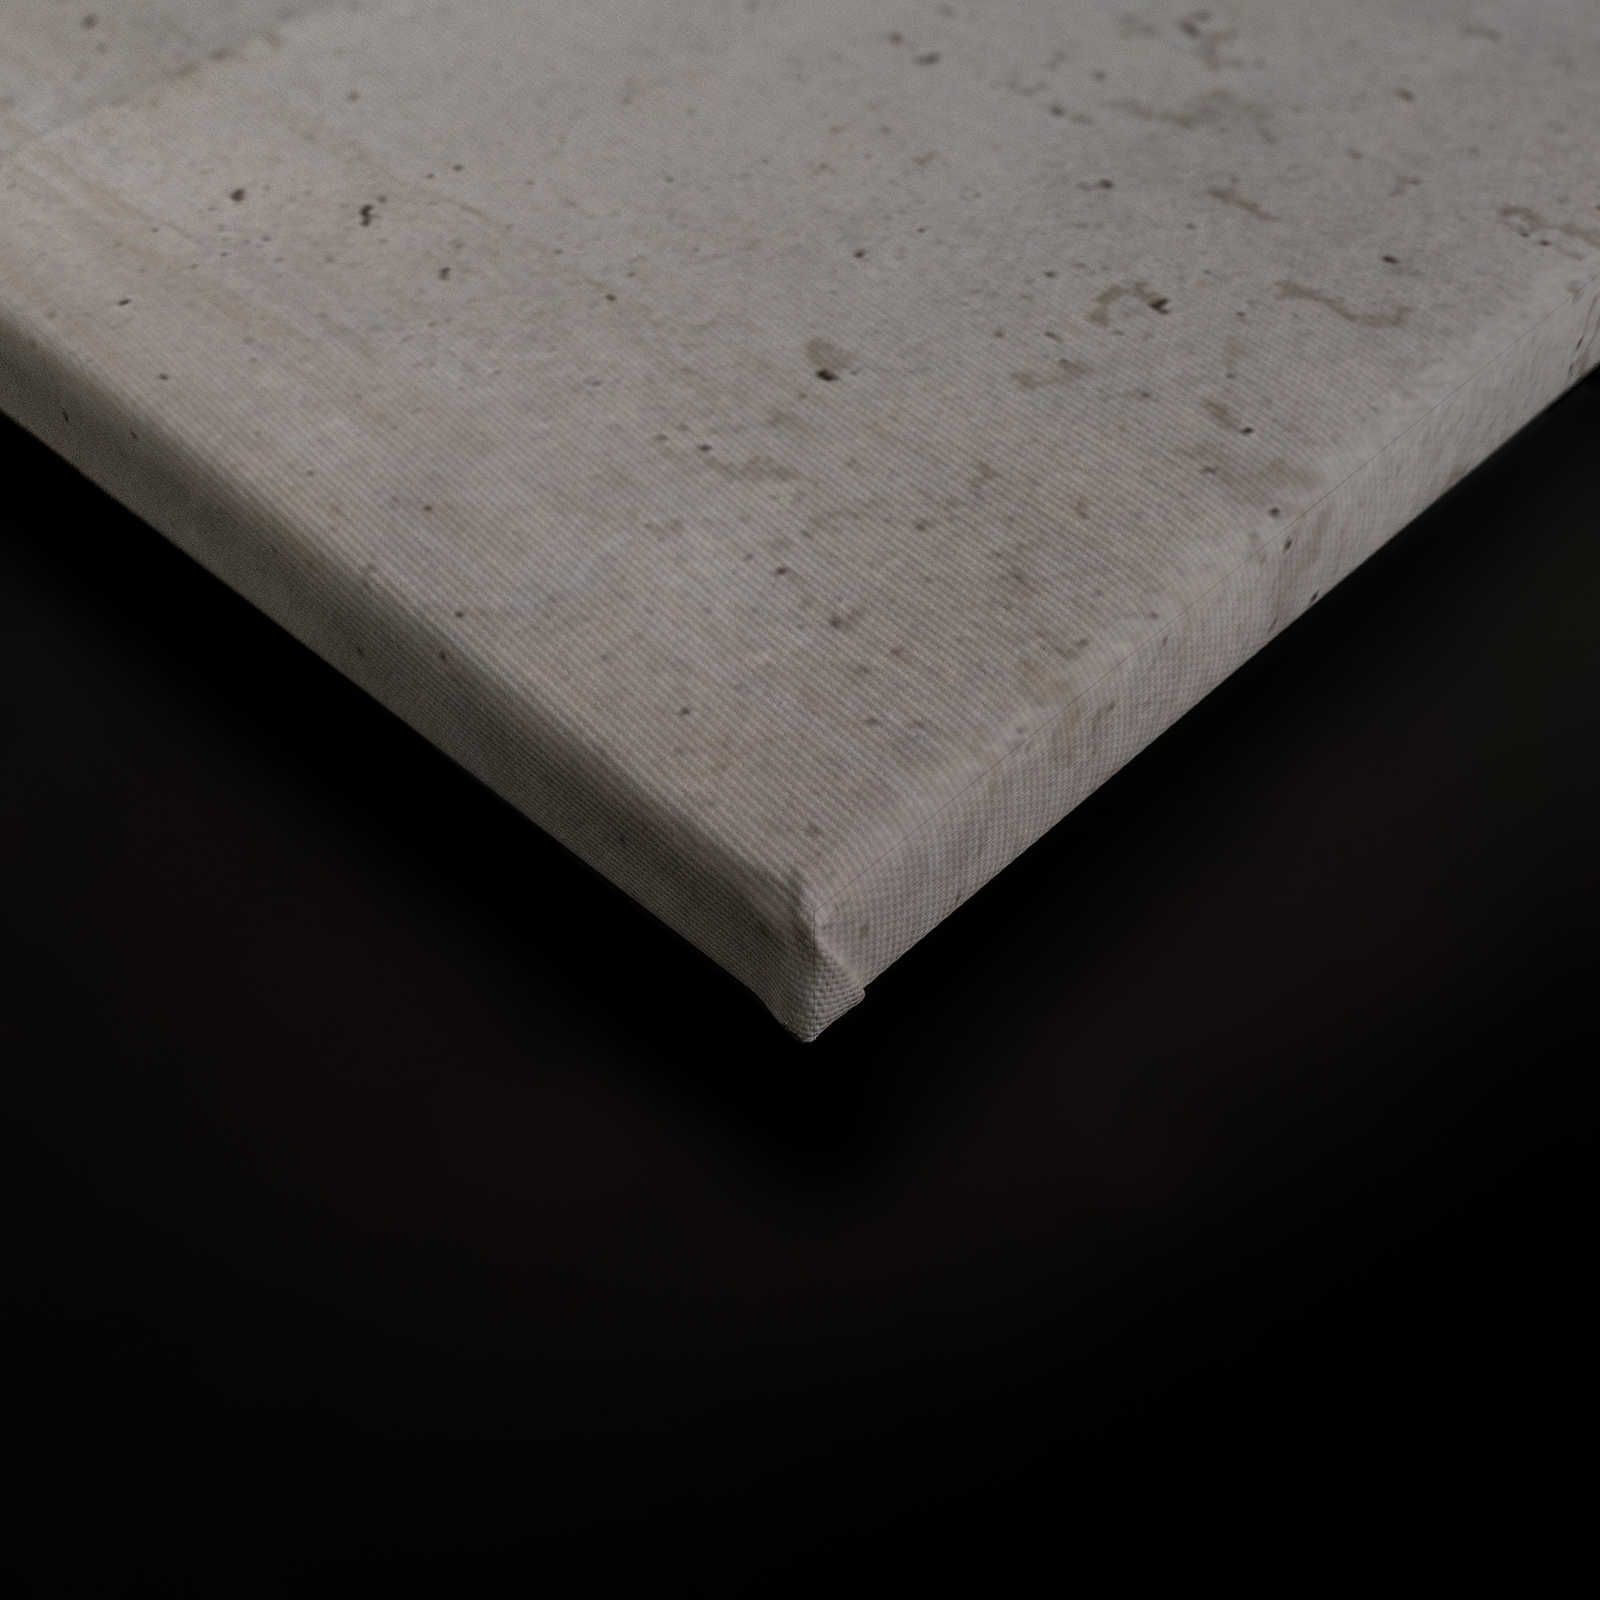             Pittura su tela di cemento Stile industriale Parete di cemento a vista - 0,90 m x 0,60 m
        